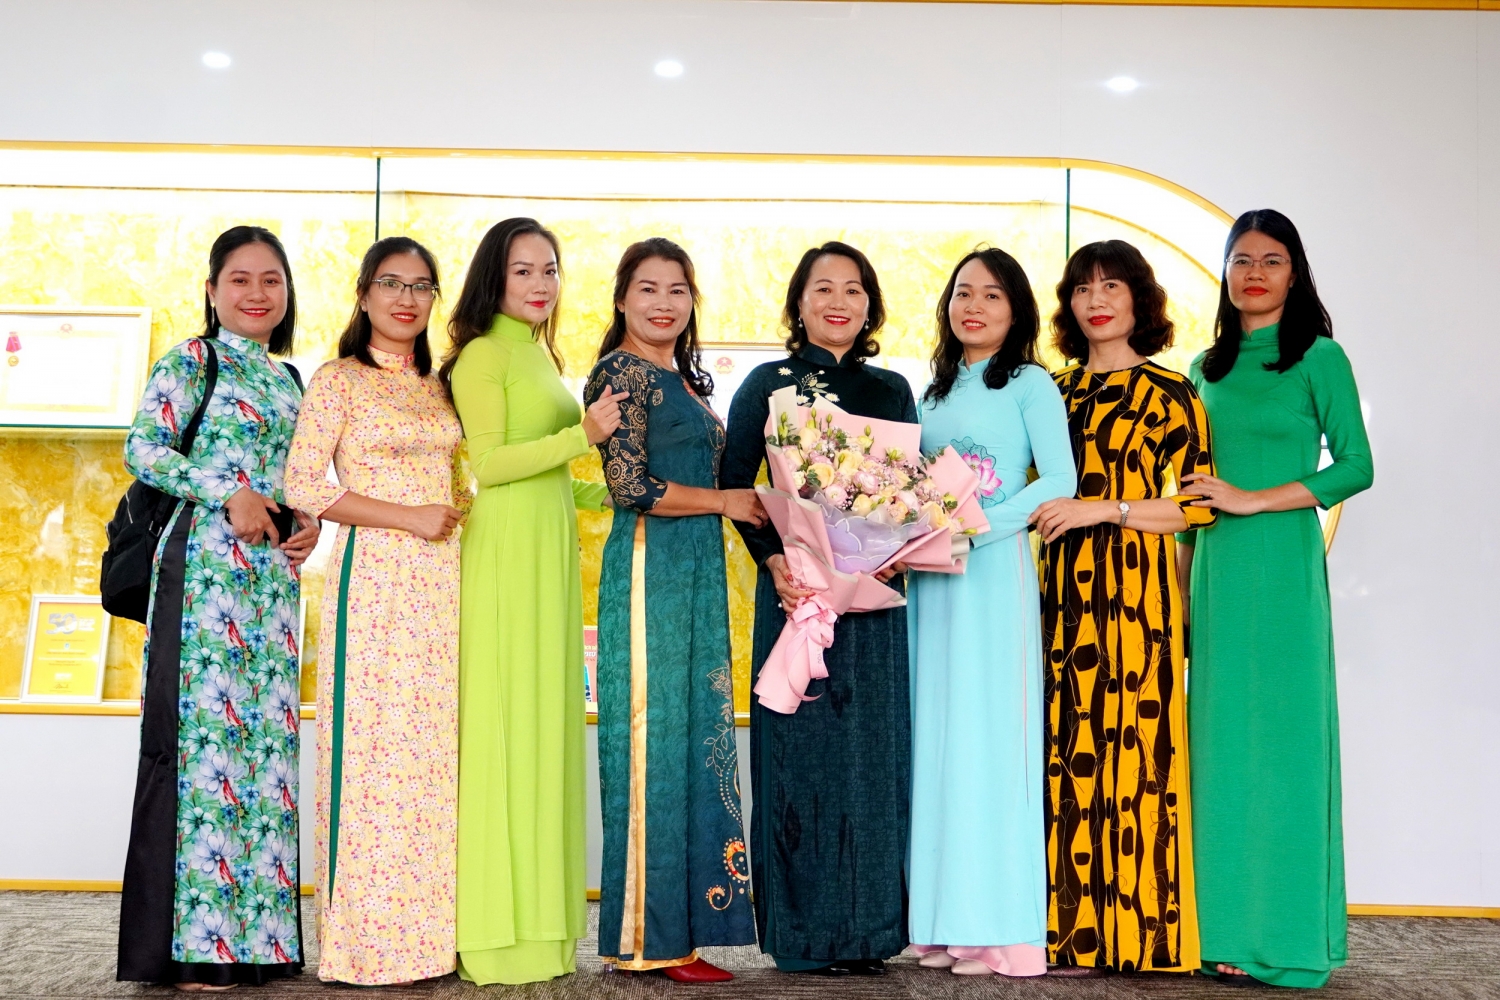 Chị em nữ CBCNV Công ty CP CNG Việt Nam nhận lời chúc mừng tốt đẹp nhân ngày 20/10